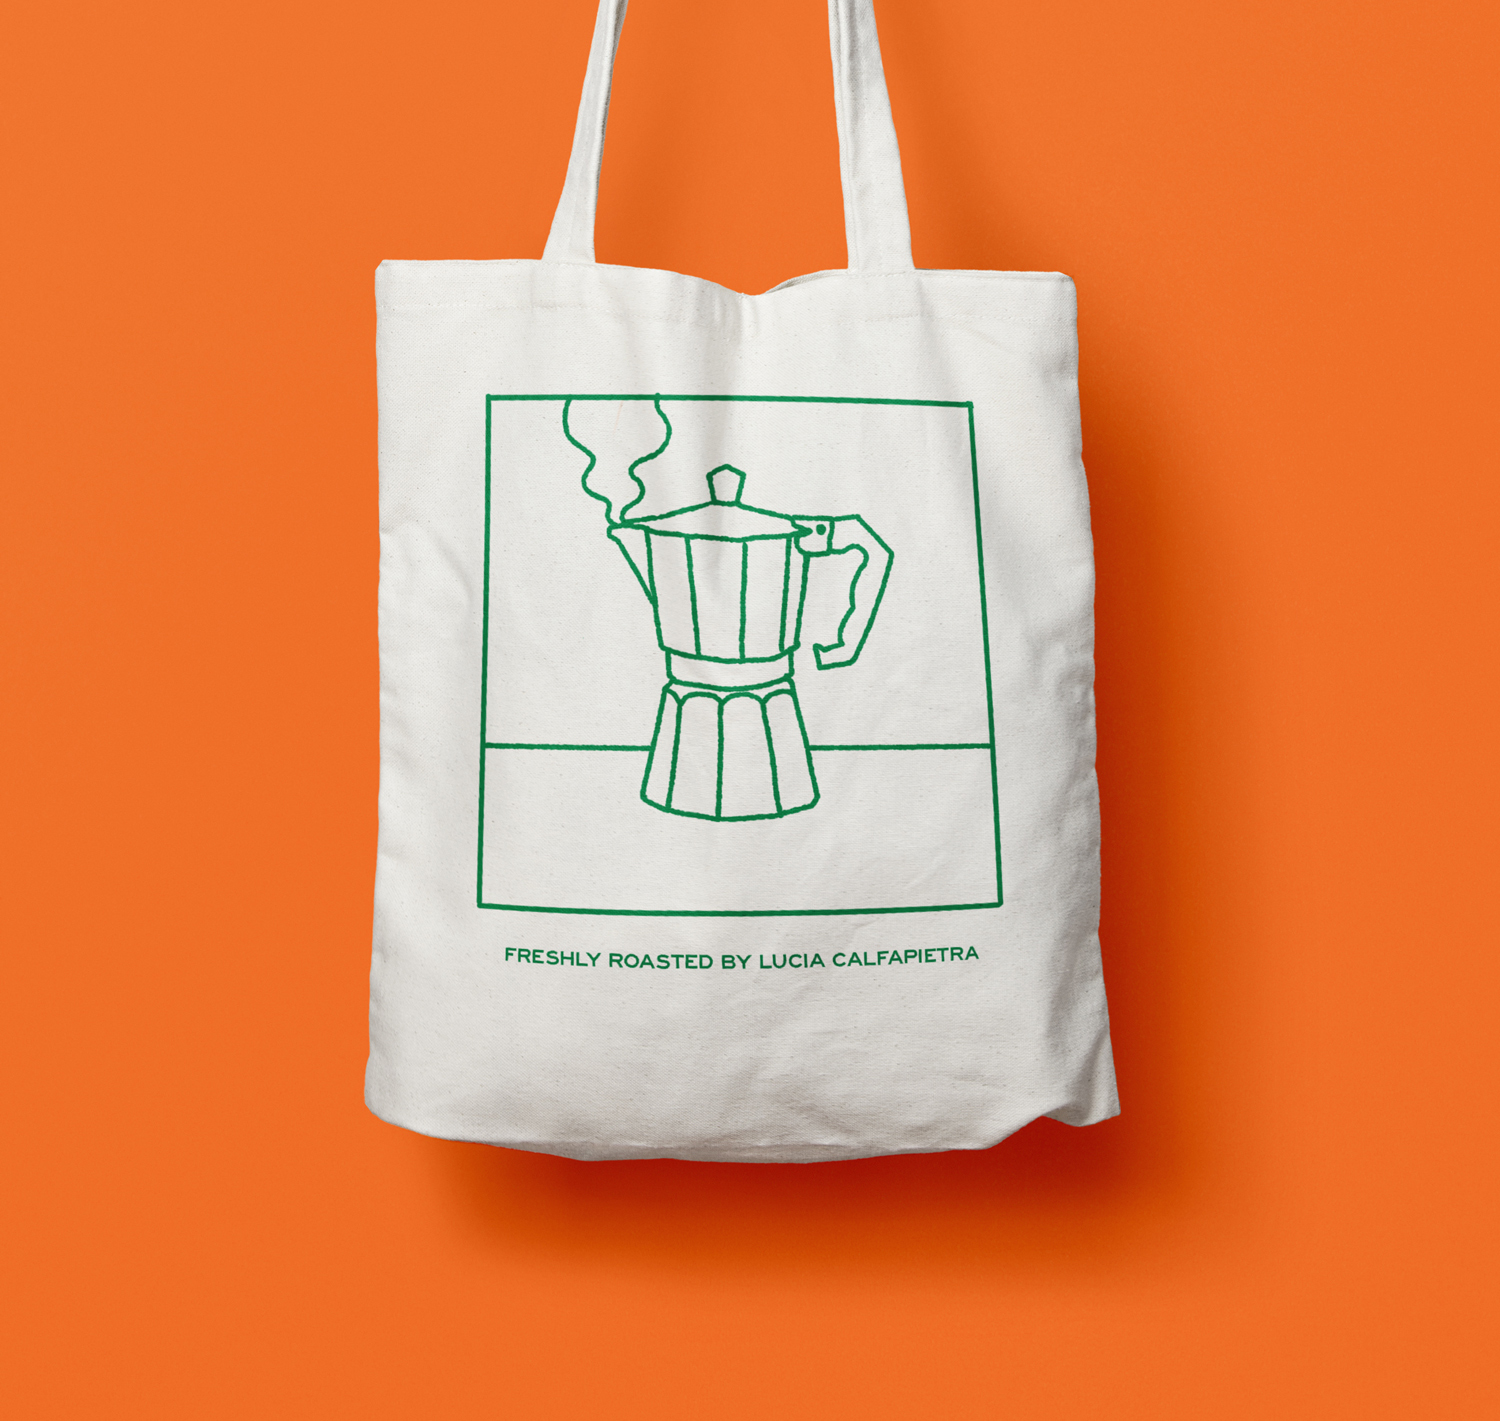 Hand printed Tote bag with moka design